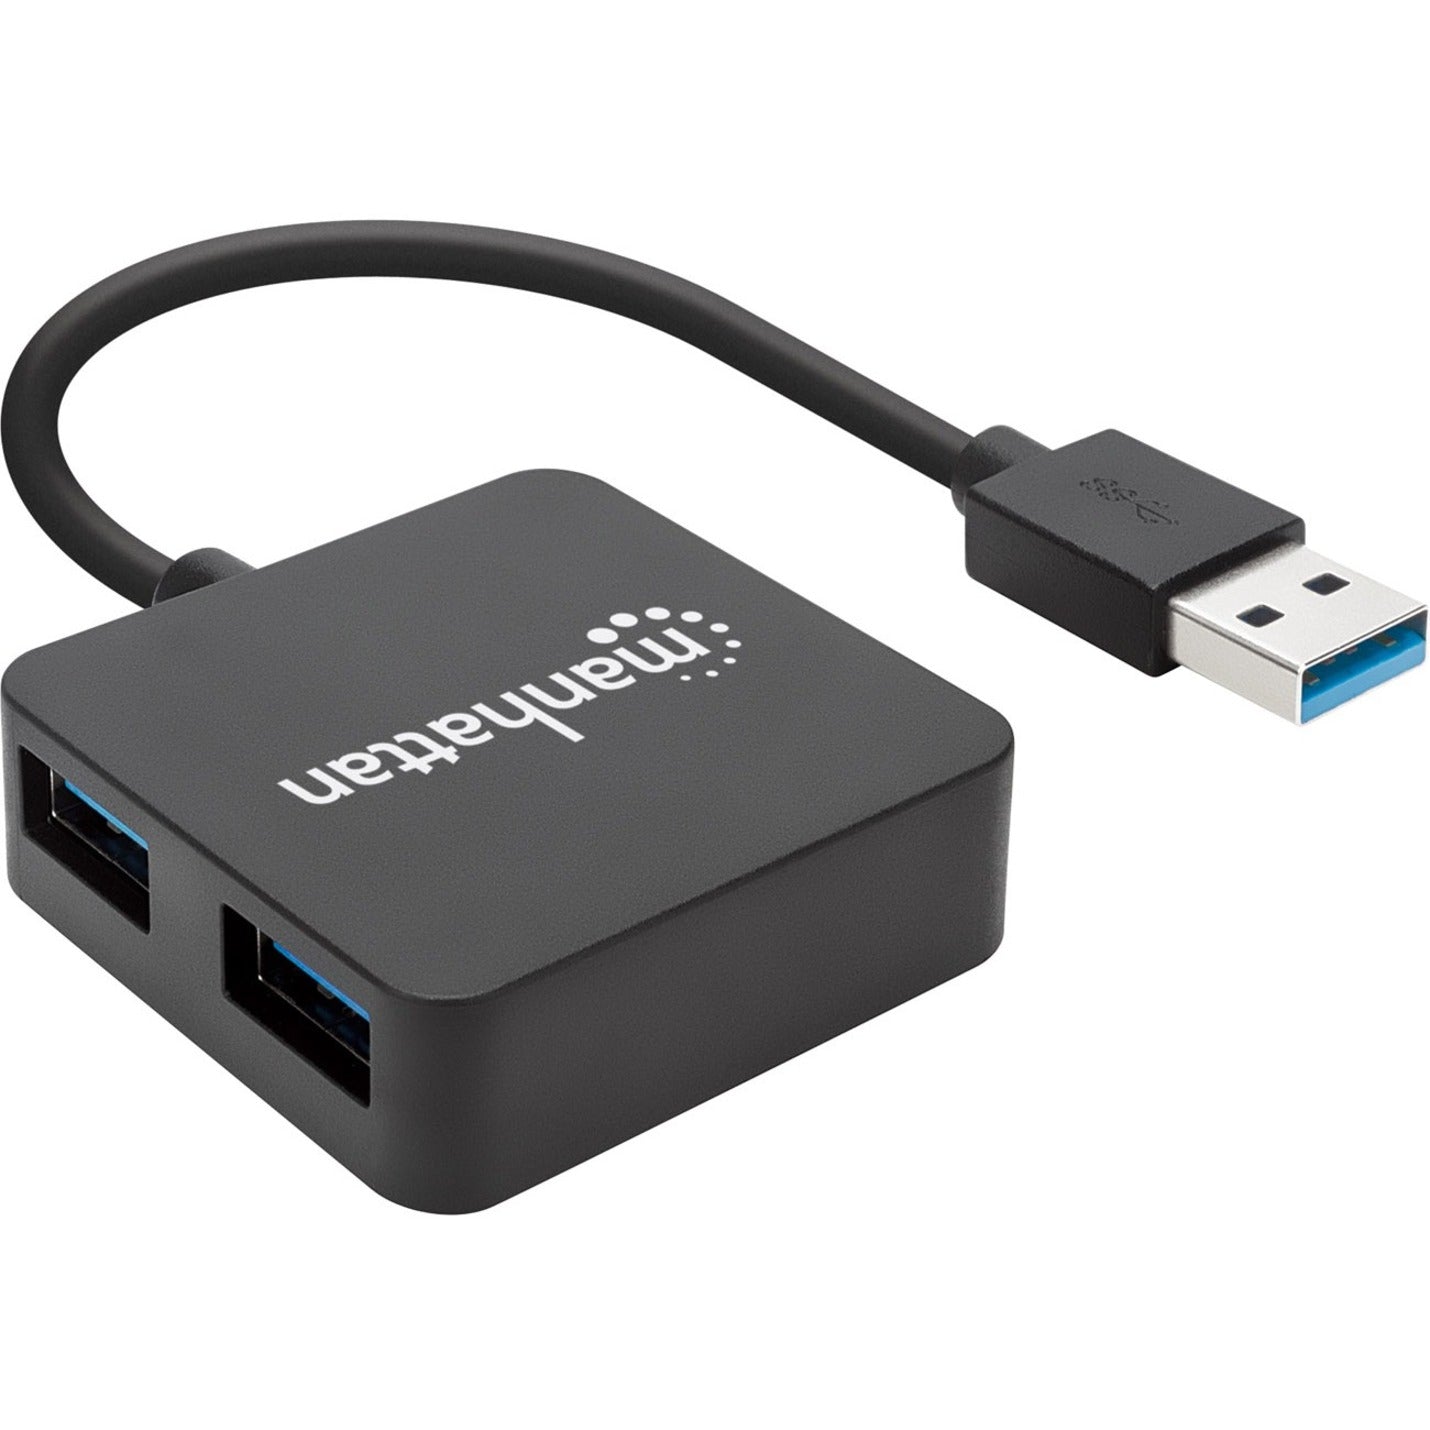 Manhattan 162296 SuperSpeed USB 3.0 Hub, 4 USB Ports, Mac/PC Compatible